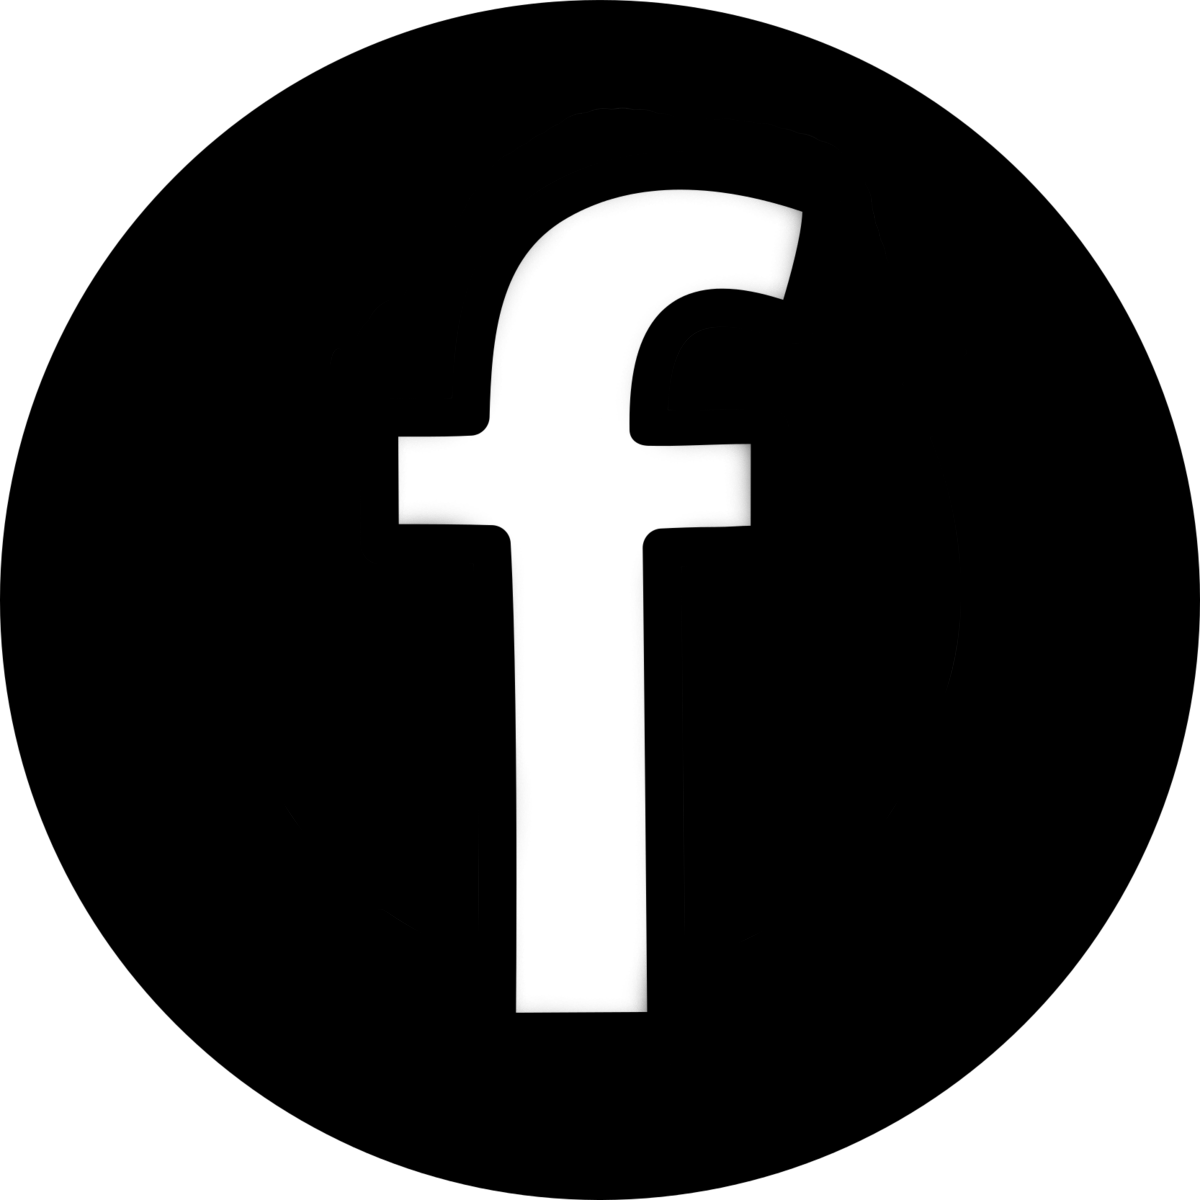  Facebook  Logo  PNG  Facebook  Logo  Transparent Background 